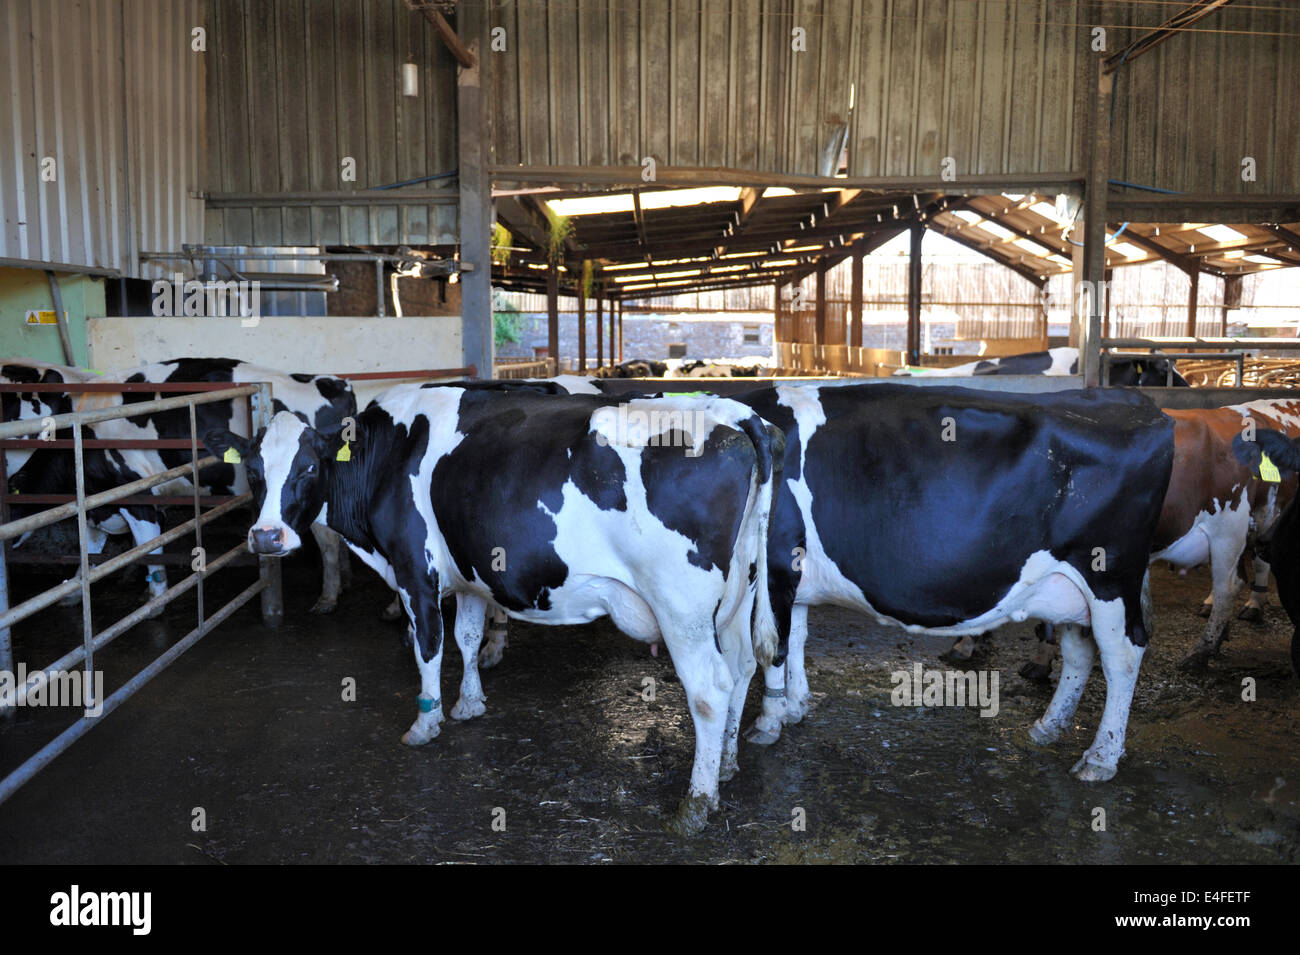 Les bovins laitiers de l'alignement sur leurs propres dans la collecte de cour pour être traites dans une salle de traite rotative moderne, Pays de Galles, Royaume-Uni Banque D'Images